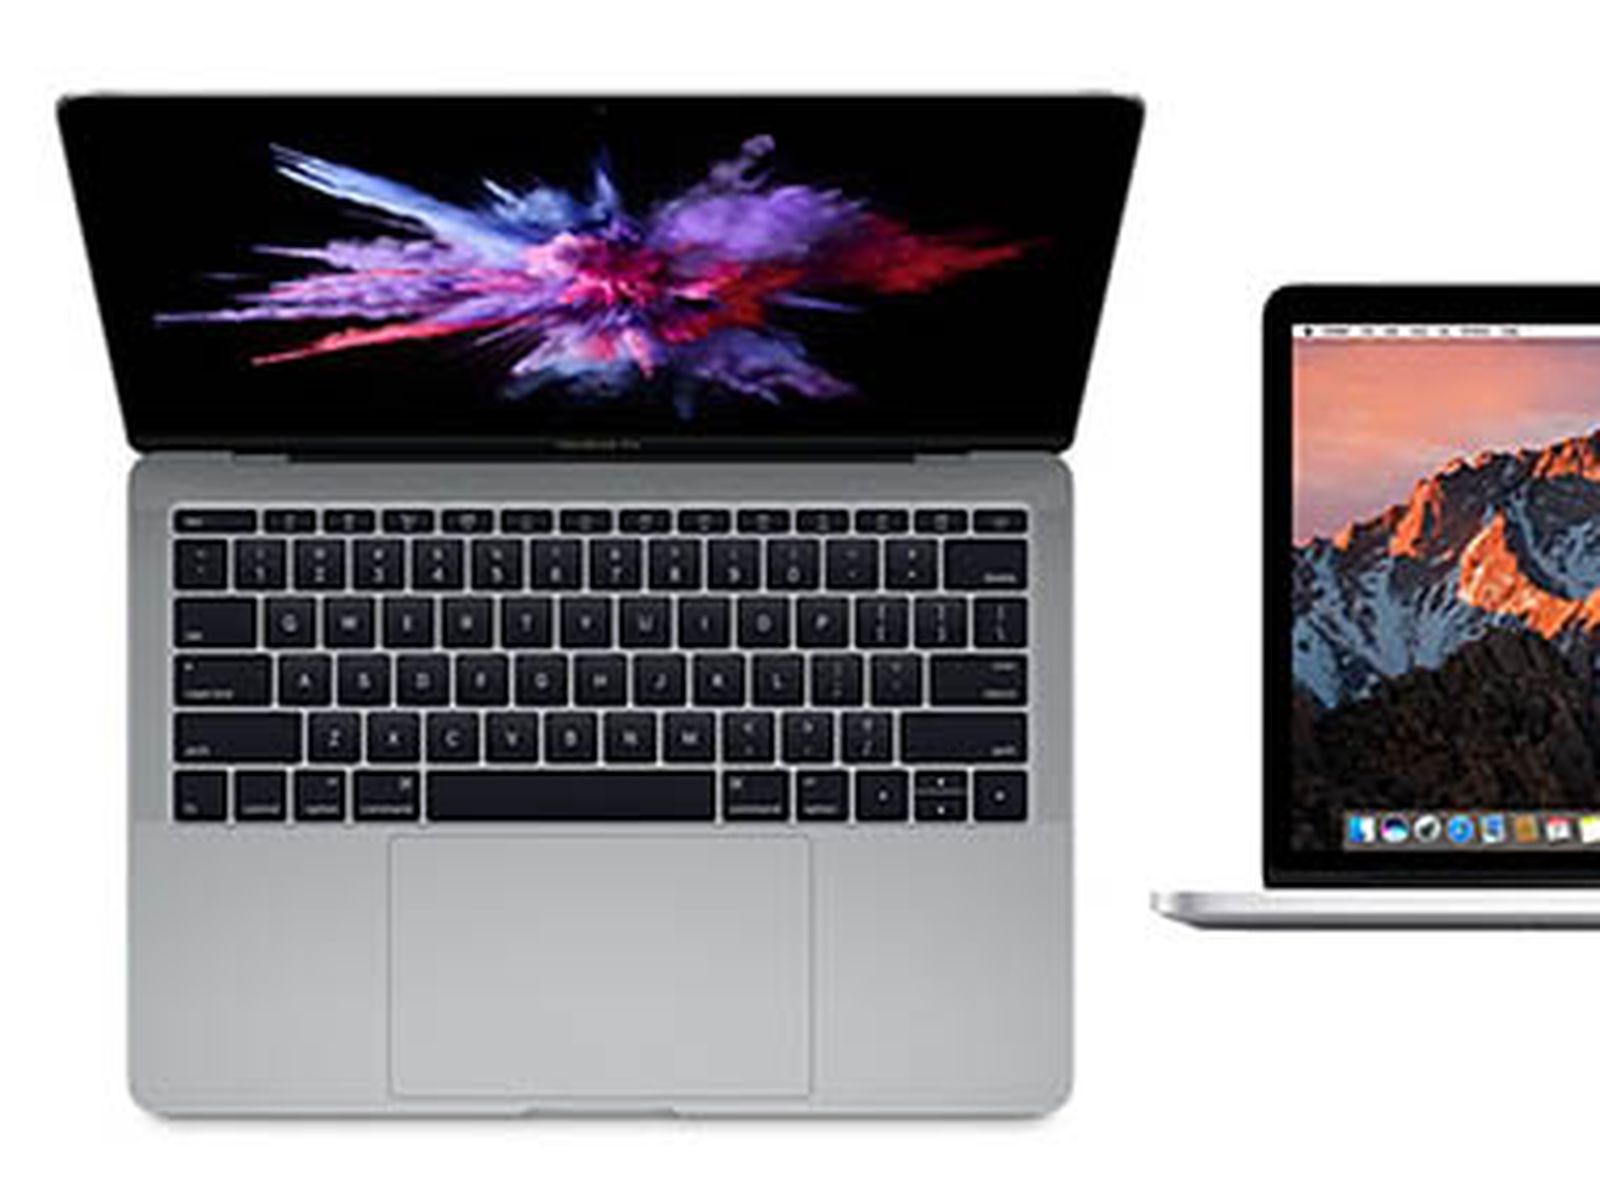 2015 macbook vs 2016 macbook